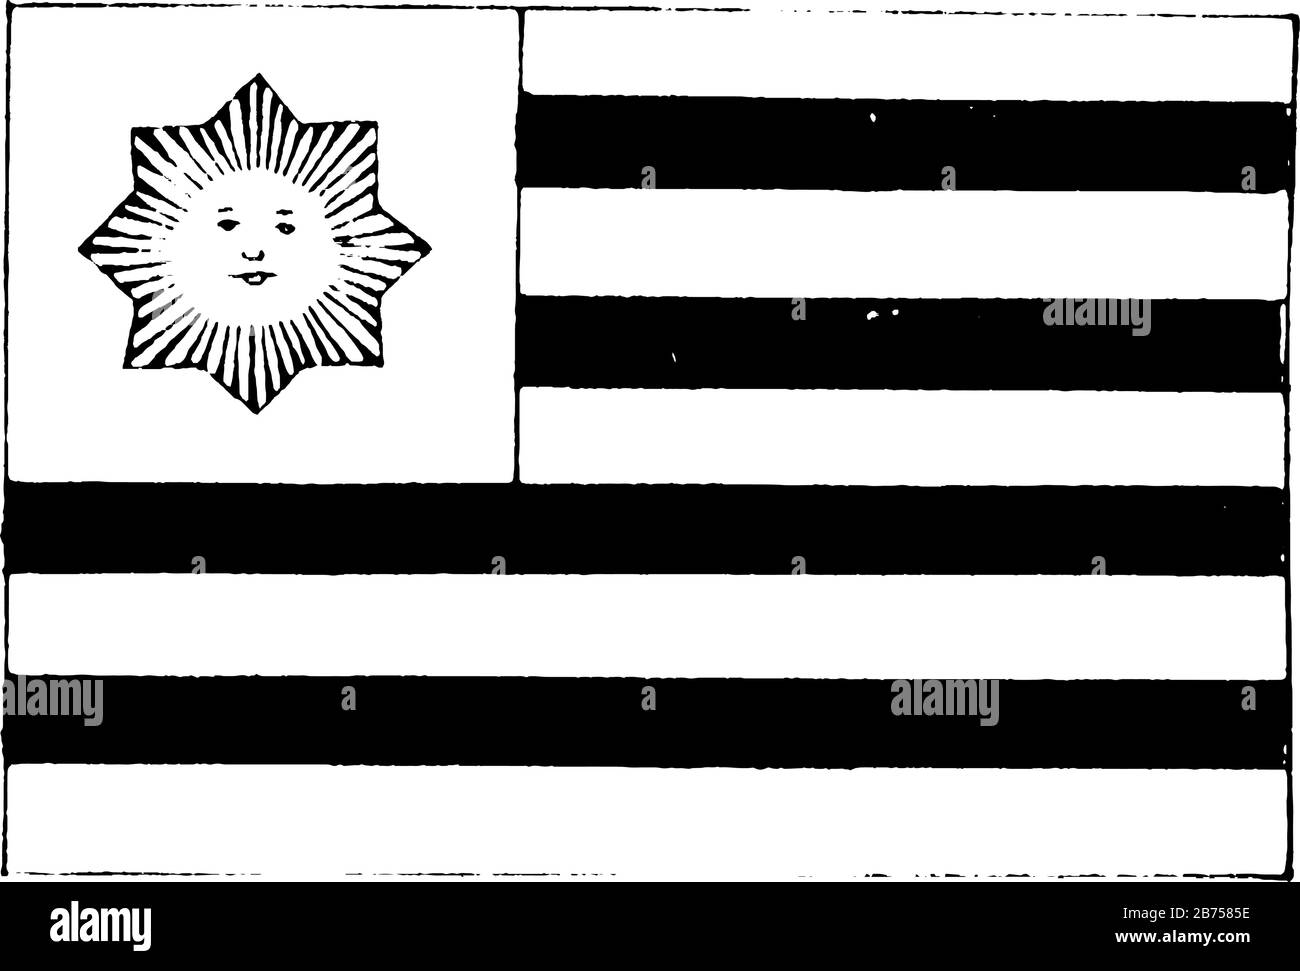 Uruguay, 1923, ce drapeau a neuf bandes horizontales égales de blanc (haut et bas) alternant avec bleu, un soleil jaune portant le visage humain en blanc CA Illustration de Vecteur